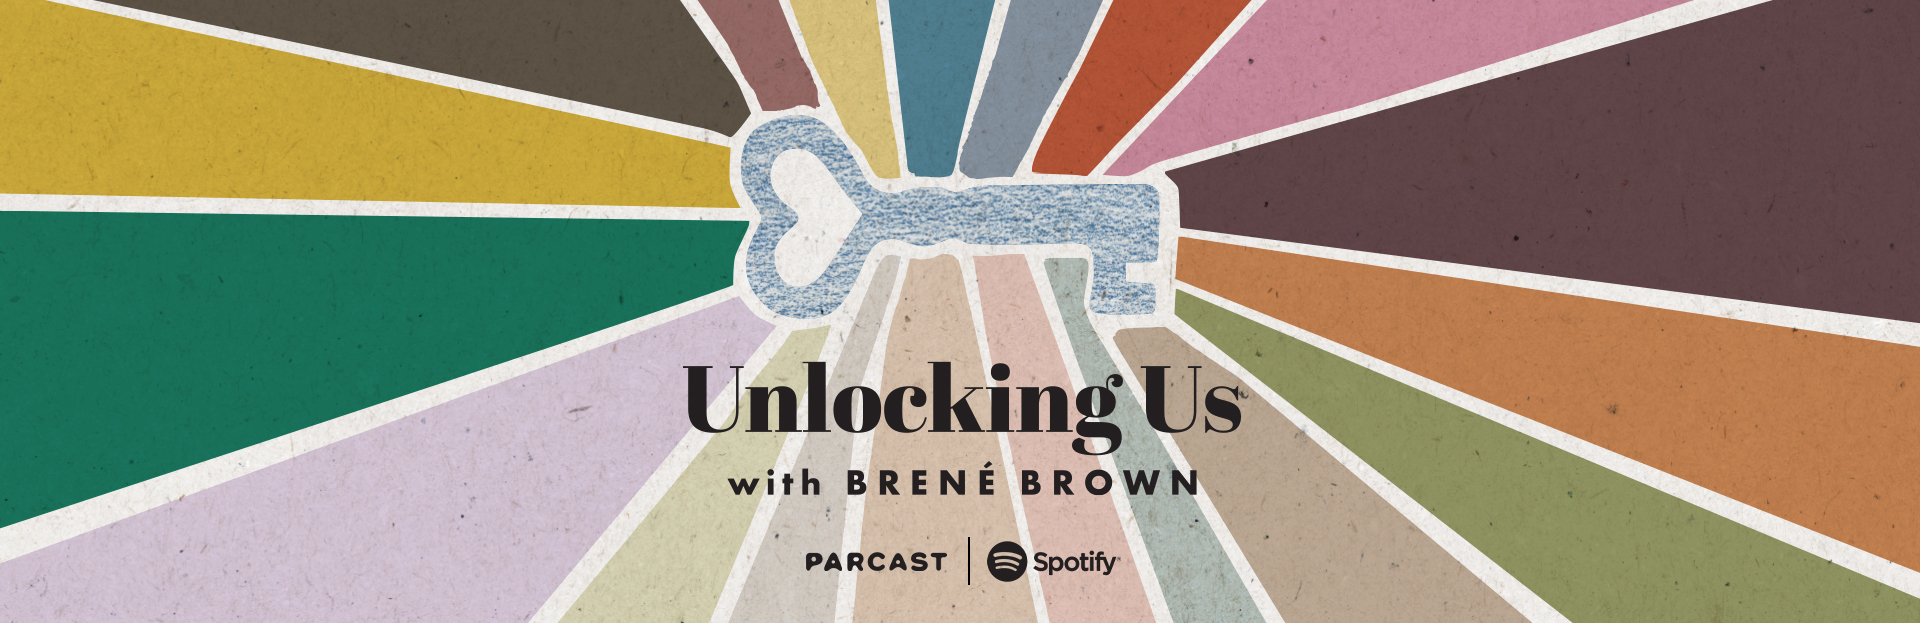 Unlocking us podcast logo